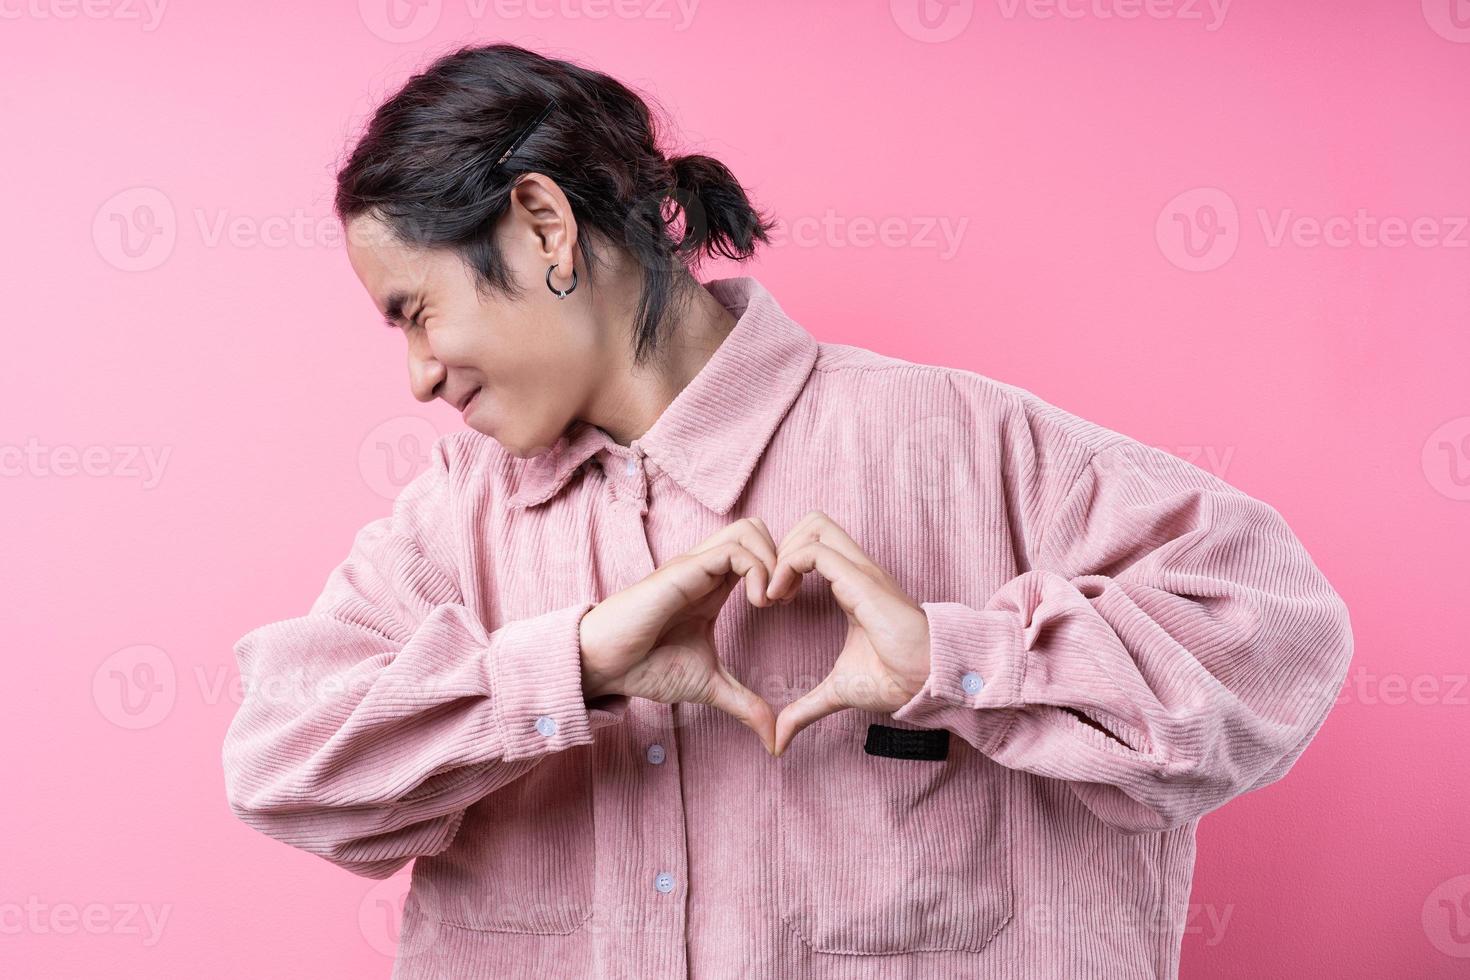 langhaariger junger asiatischer mann, der rosa hemd trägt und auf rosa hintergrund lächelt foto